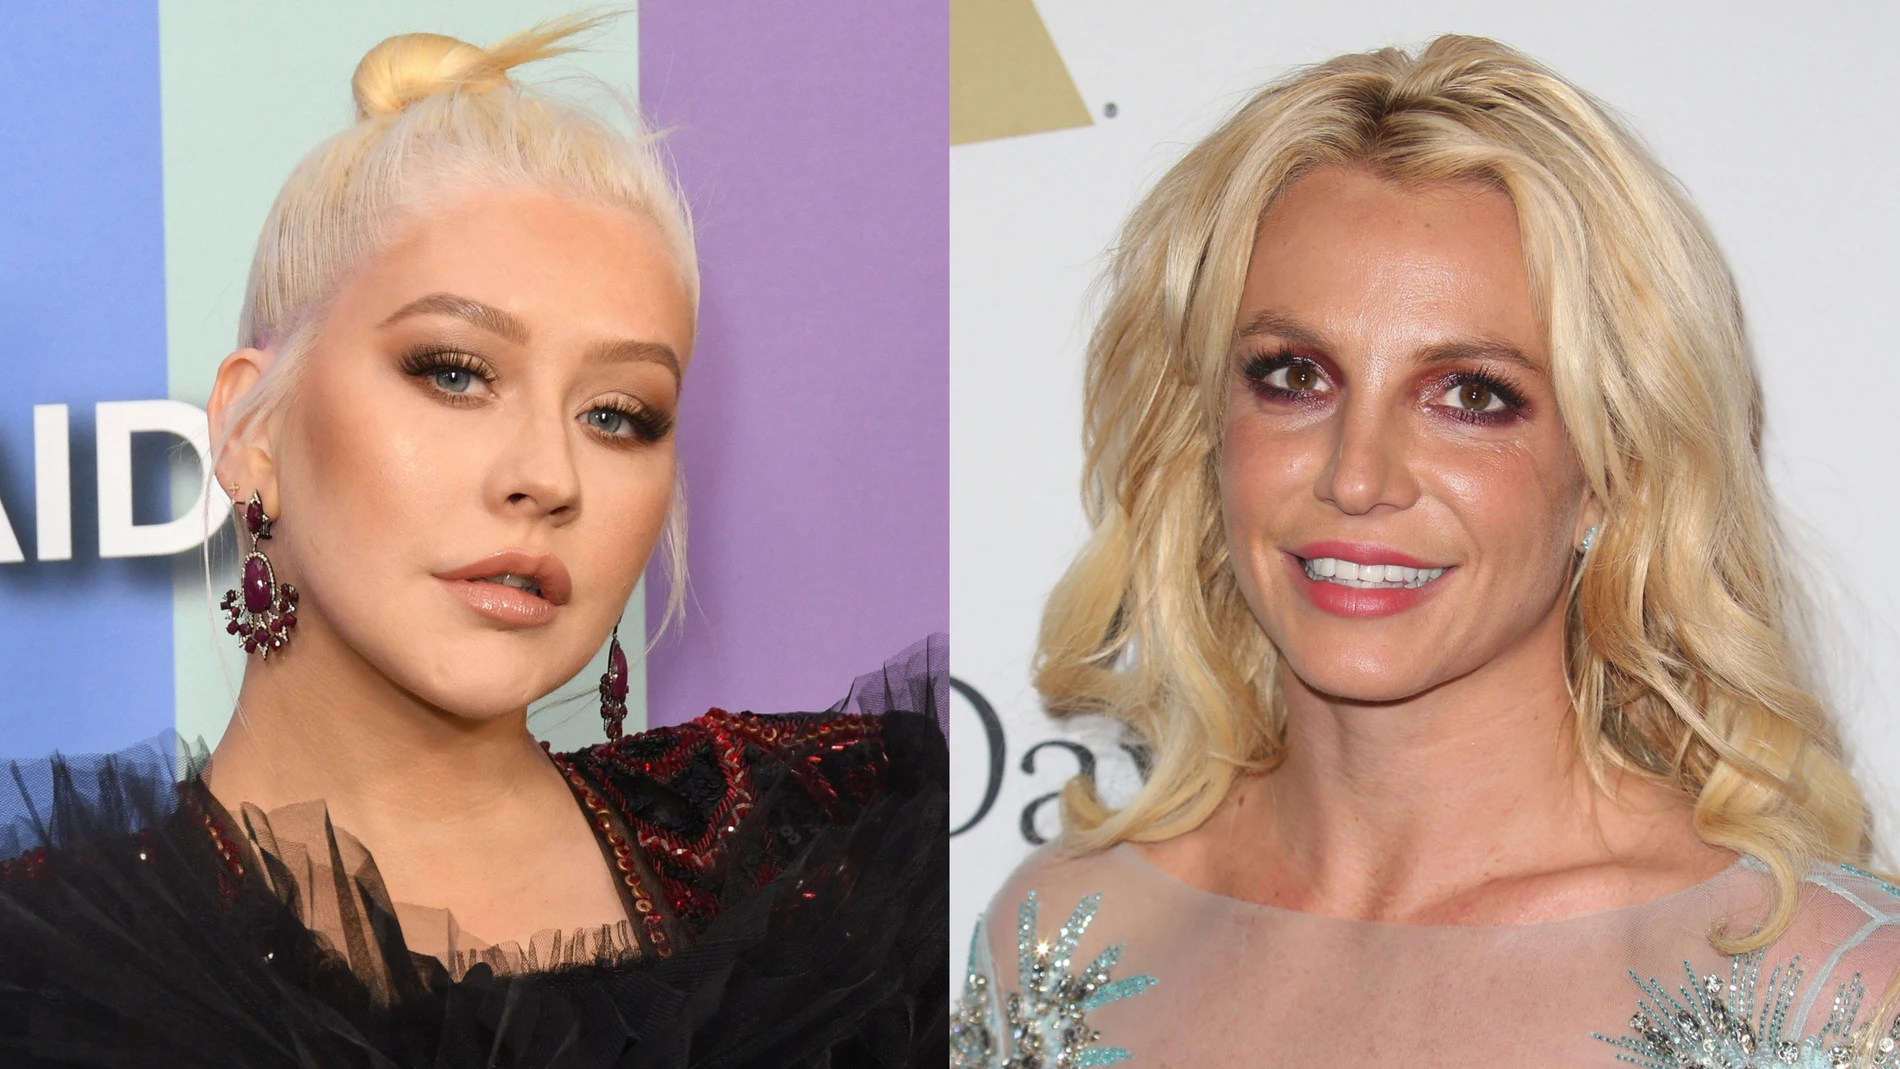 Britney Spears estalla contra Christina Aguilera por evadir preguntas sobre el caso de su tutela